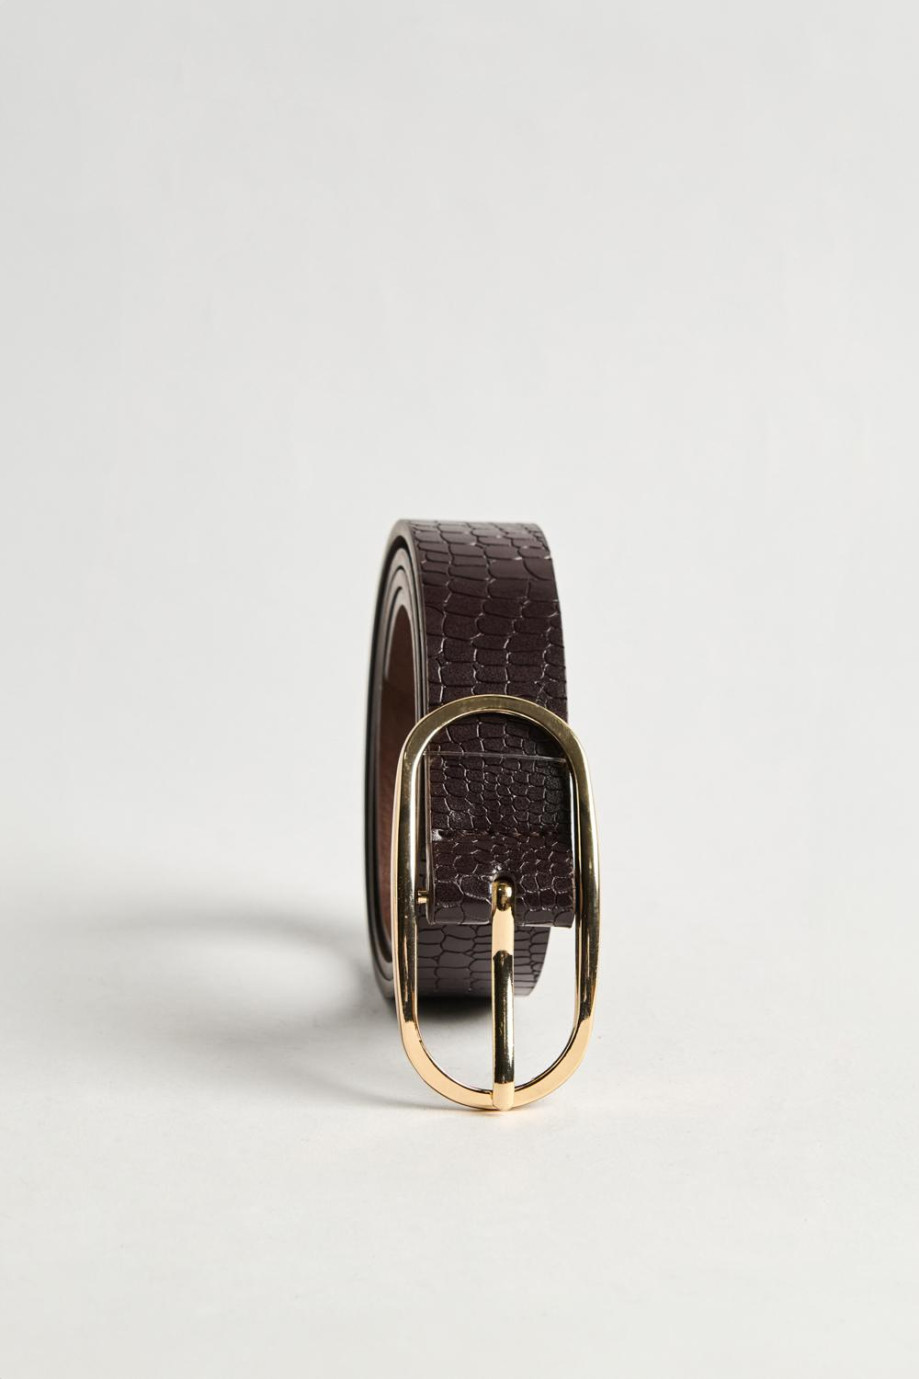 Cinturón femenino en color café oscuro, elaborado en sintético con textura tipo reptil, hebilla metálica ovalada y punta con for